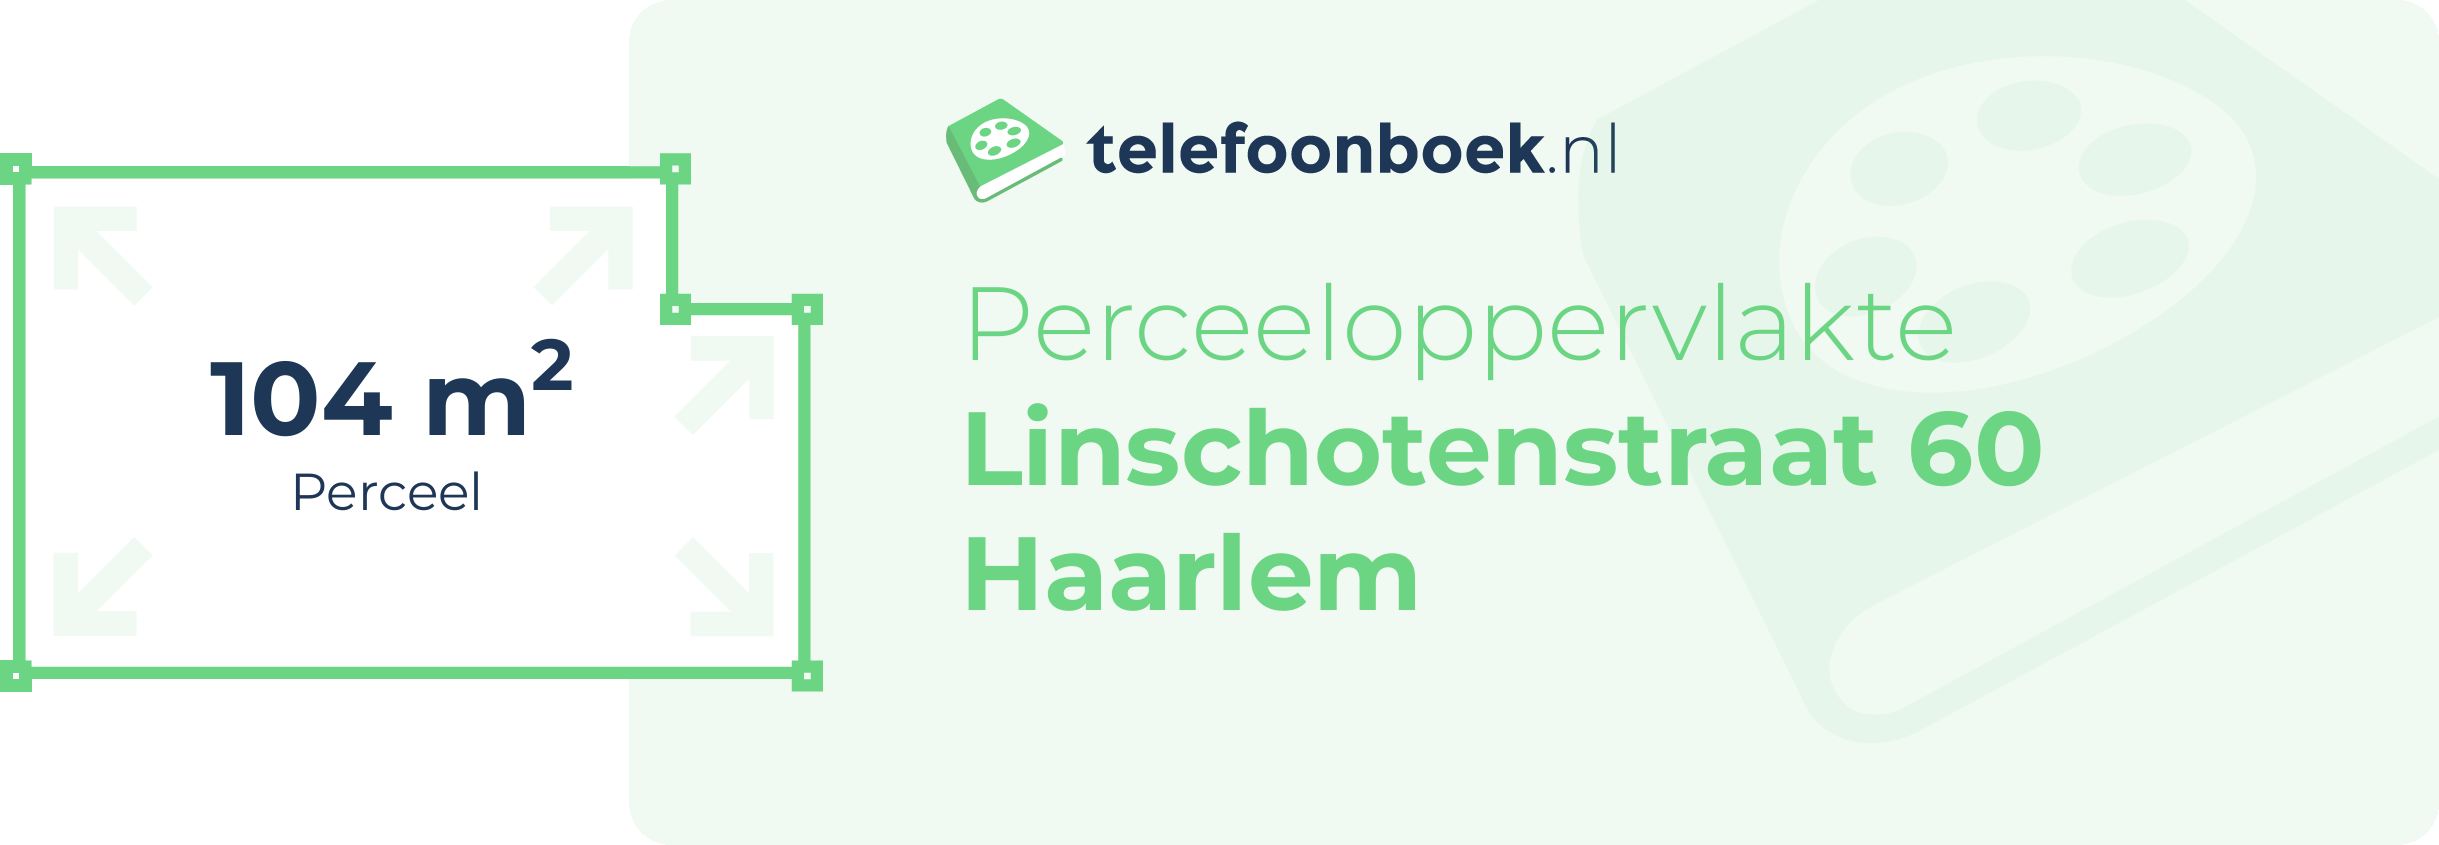 Perceeloppervlakte Linschotenstraat 60 Haarlem